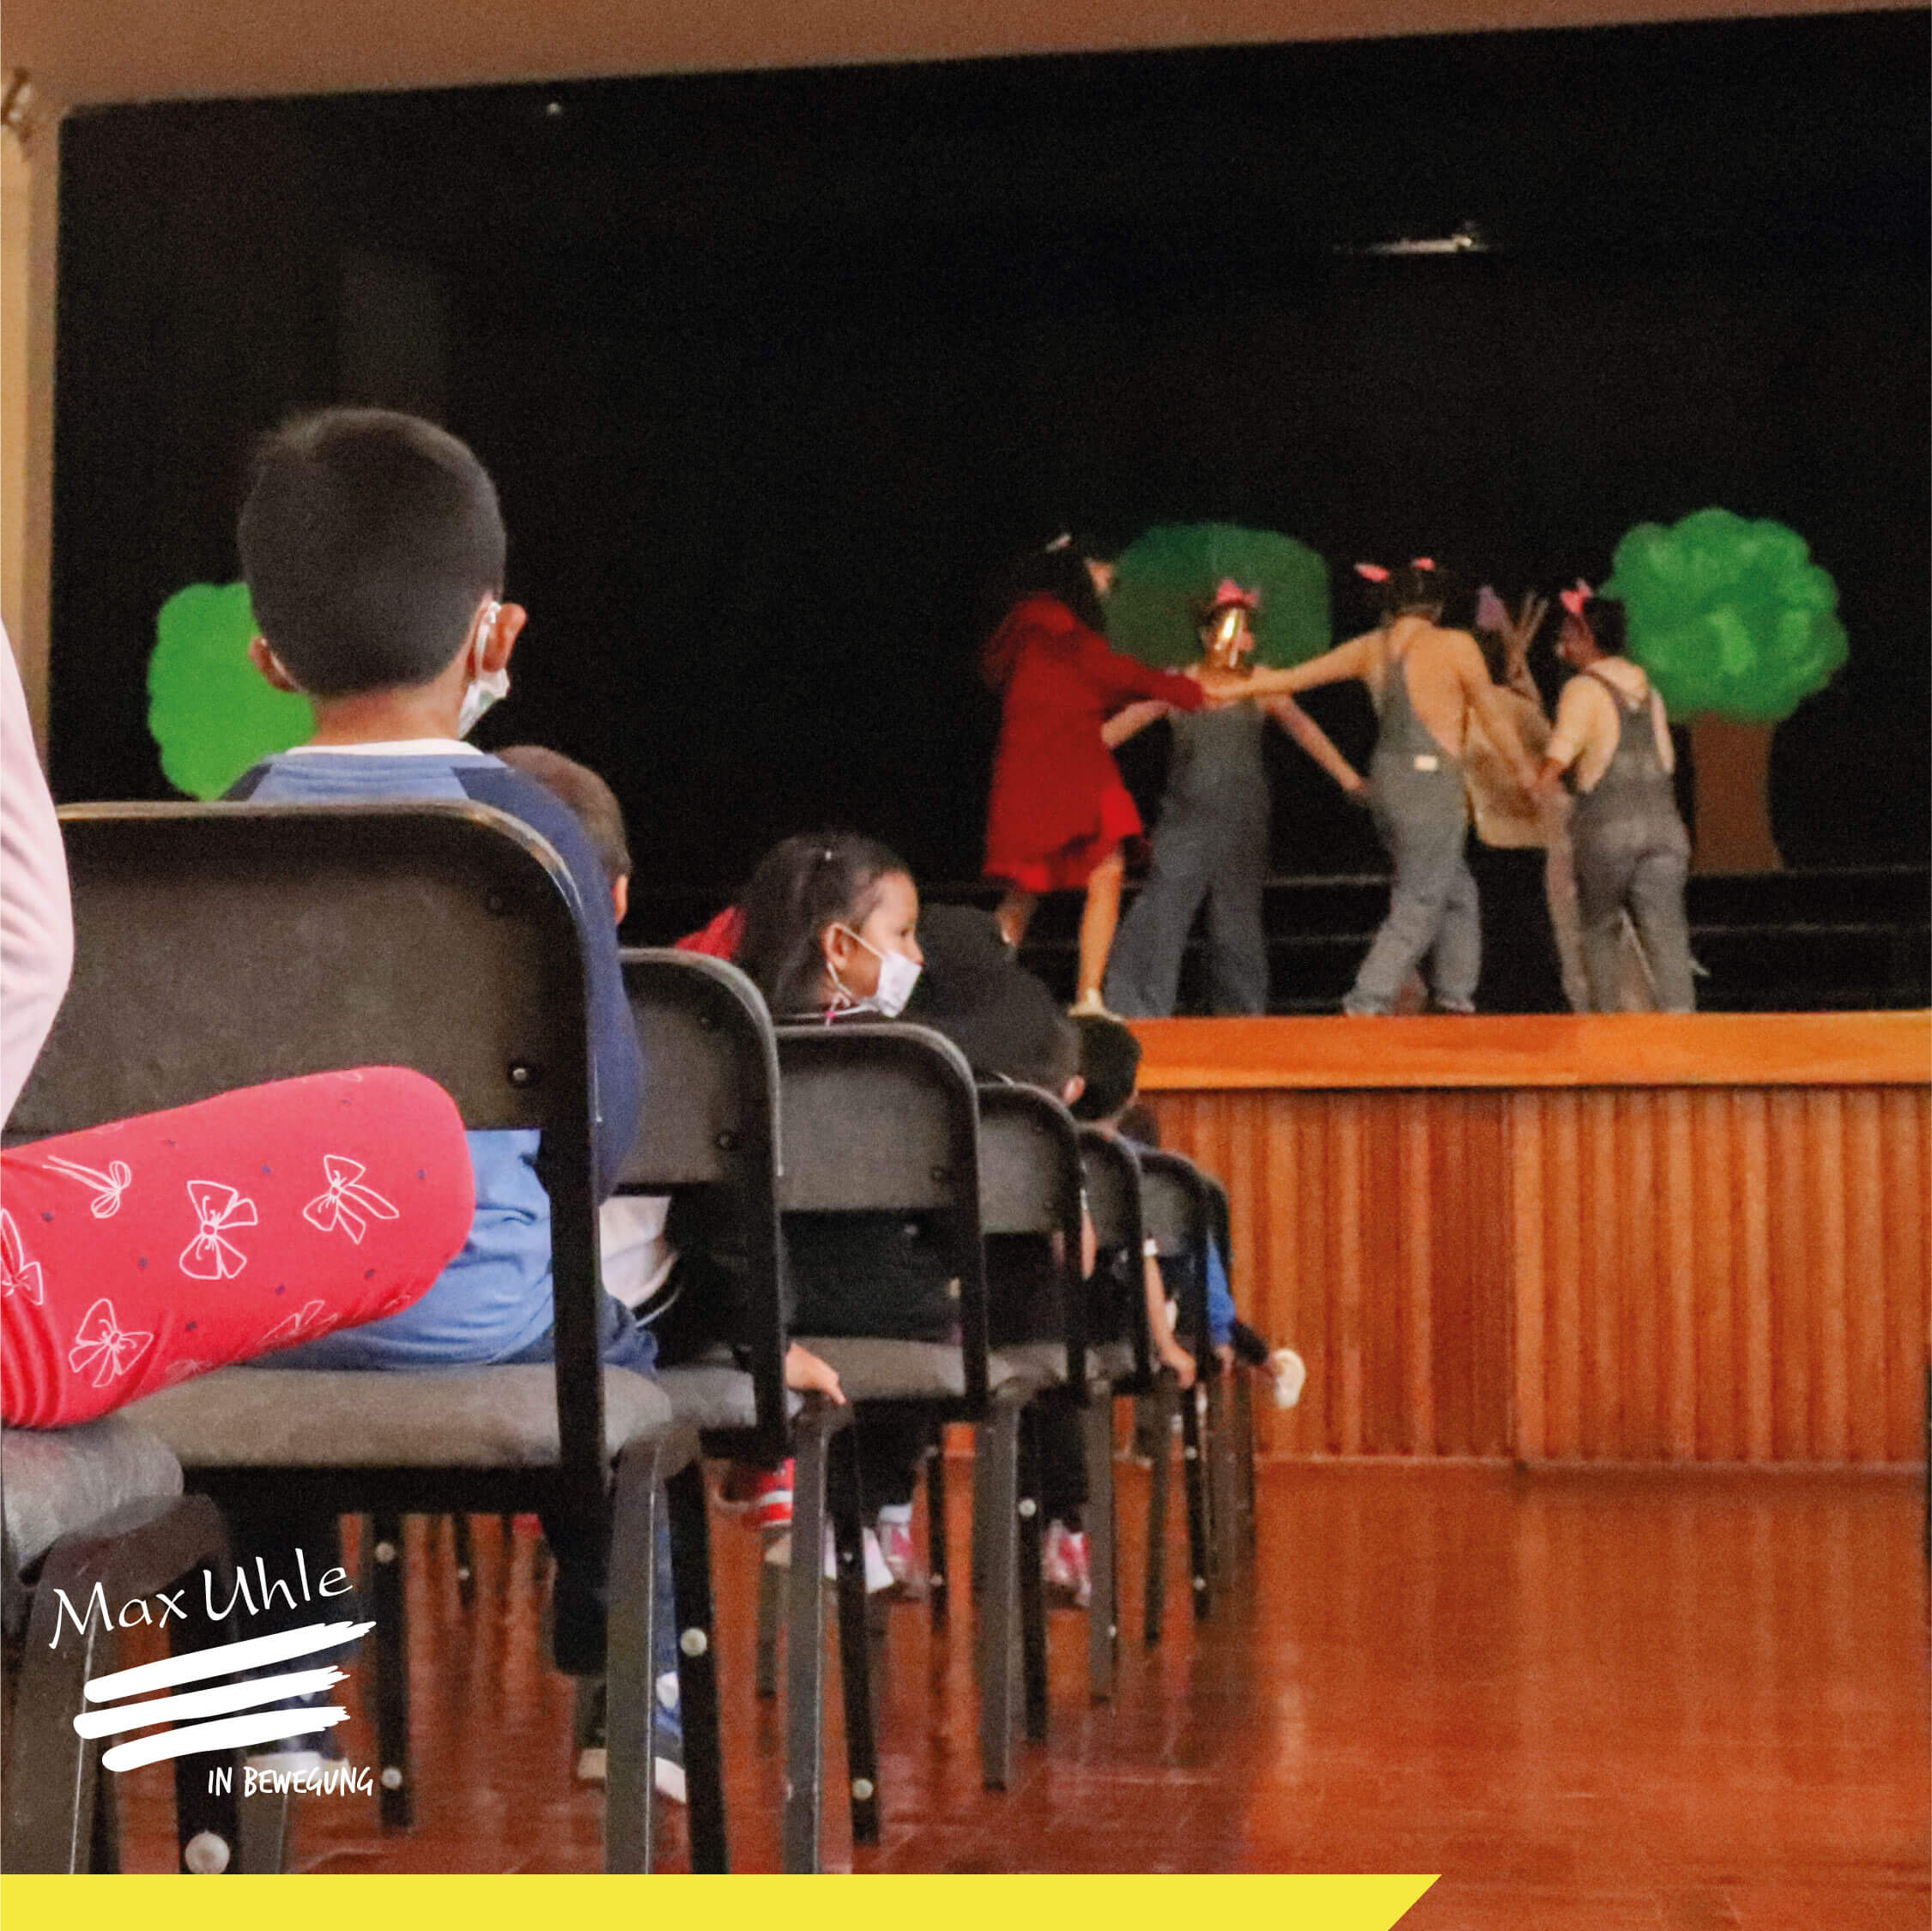 dia de la literatura infantil colegio peruano aleman max uhle arequipa peru